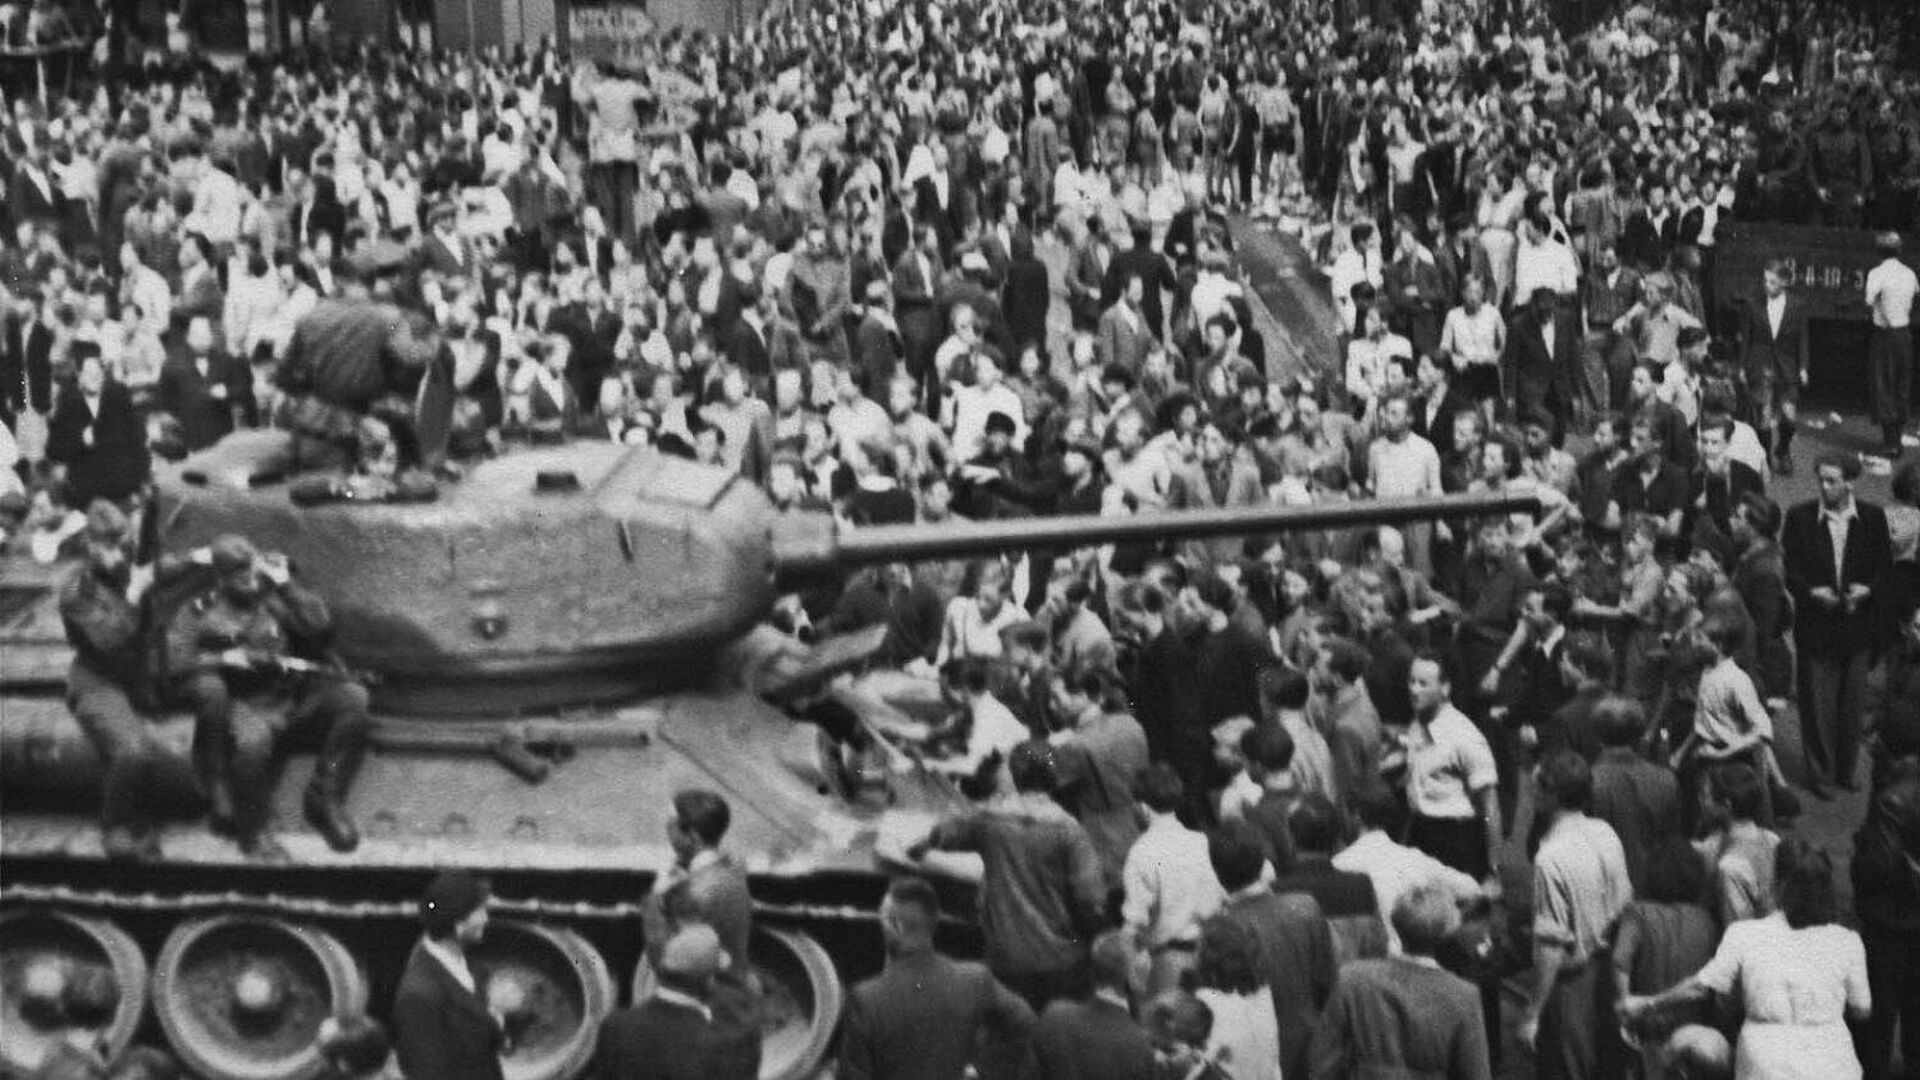 Schwarz-Weiß-Foto einer Menschenmenge, die einen Panzer umringt, auf dem bewaffnete Soldaten sitzen.